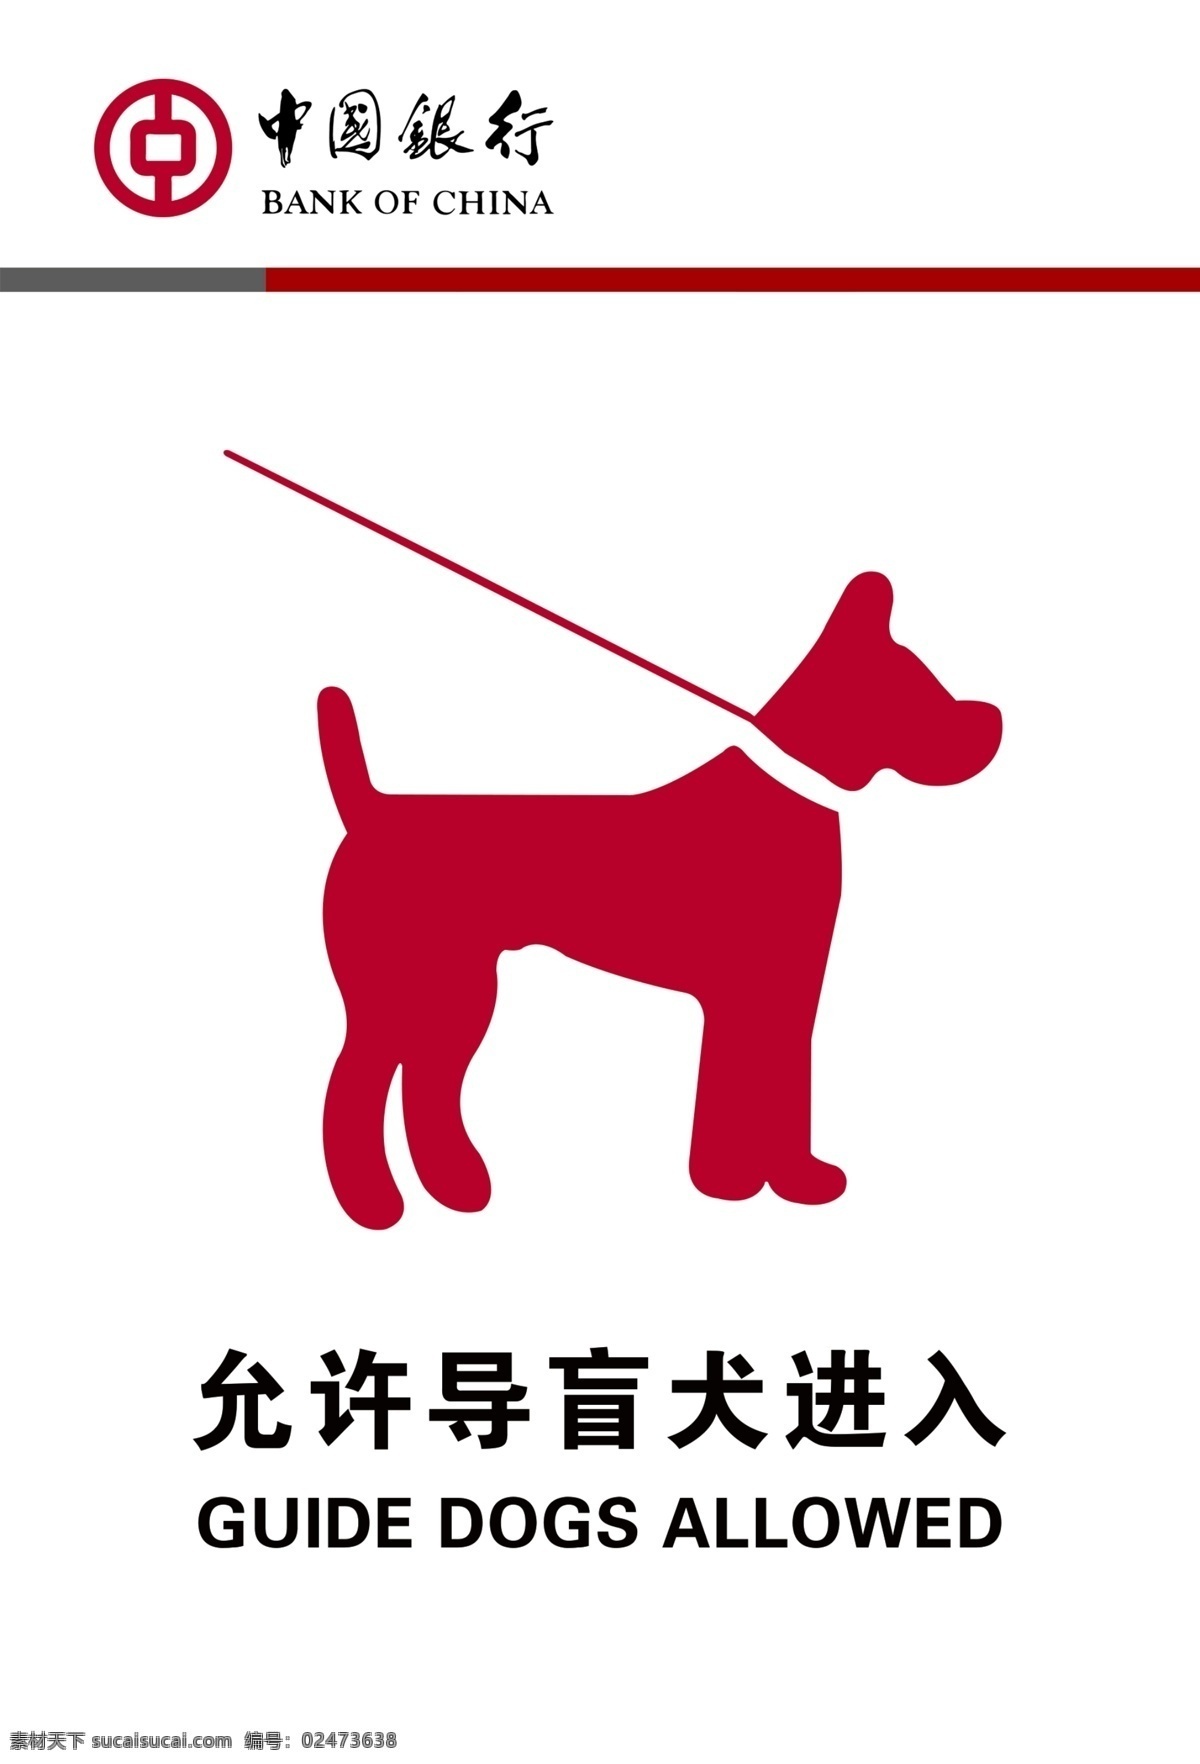 允许 导 盲 犬 进入 导盲犬 中国银行 红灰线 银行标志 银行标牌